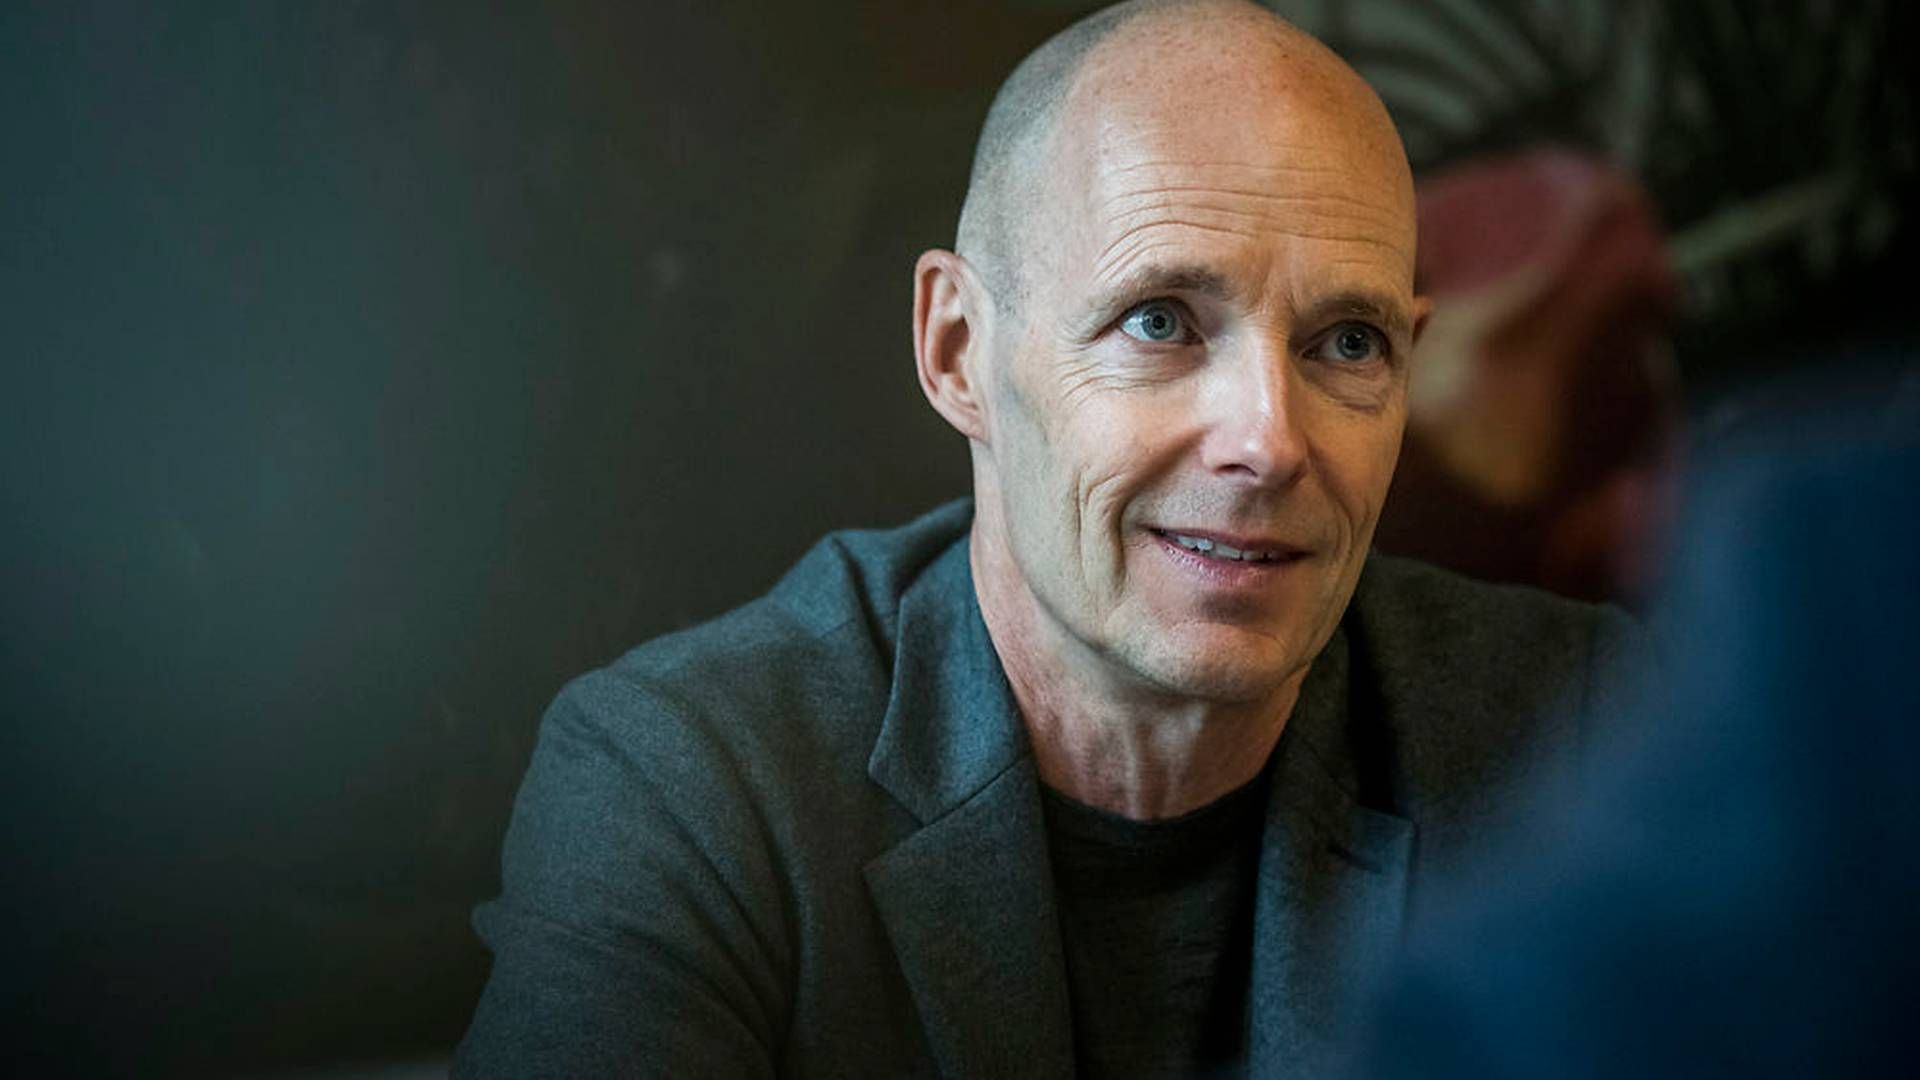 Henrik Clausen, adm. direktør for Bang & Olufsen, bliver en del af NENT's bestyrelse. | Foto: Ritzau Scanpix/Asger Ladefoged